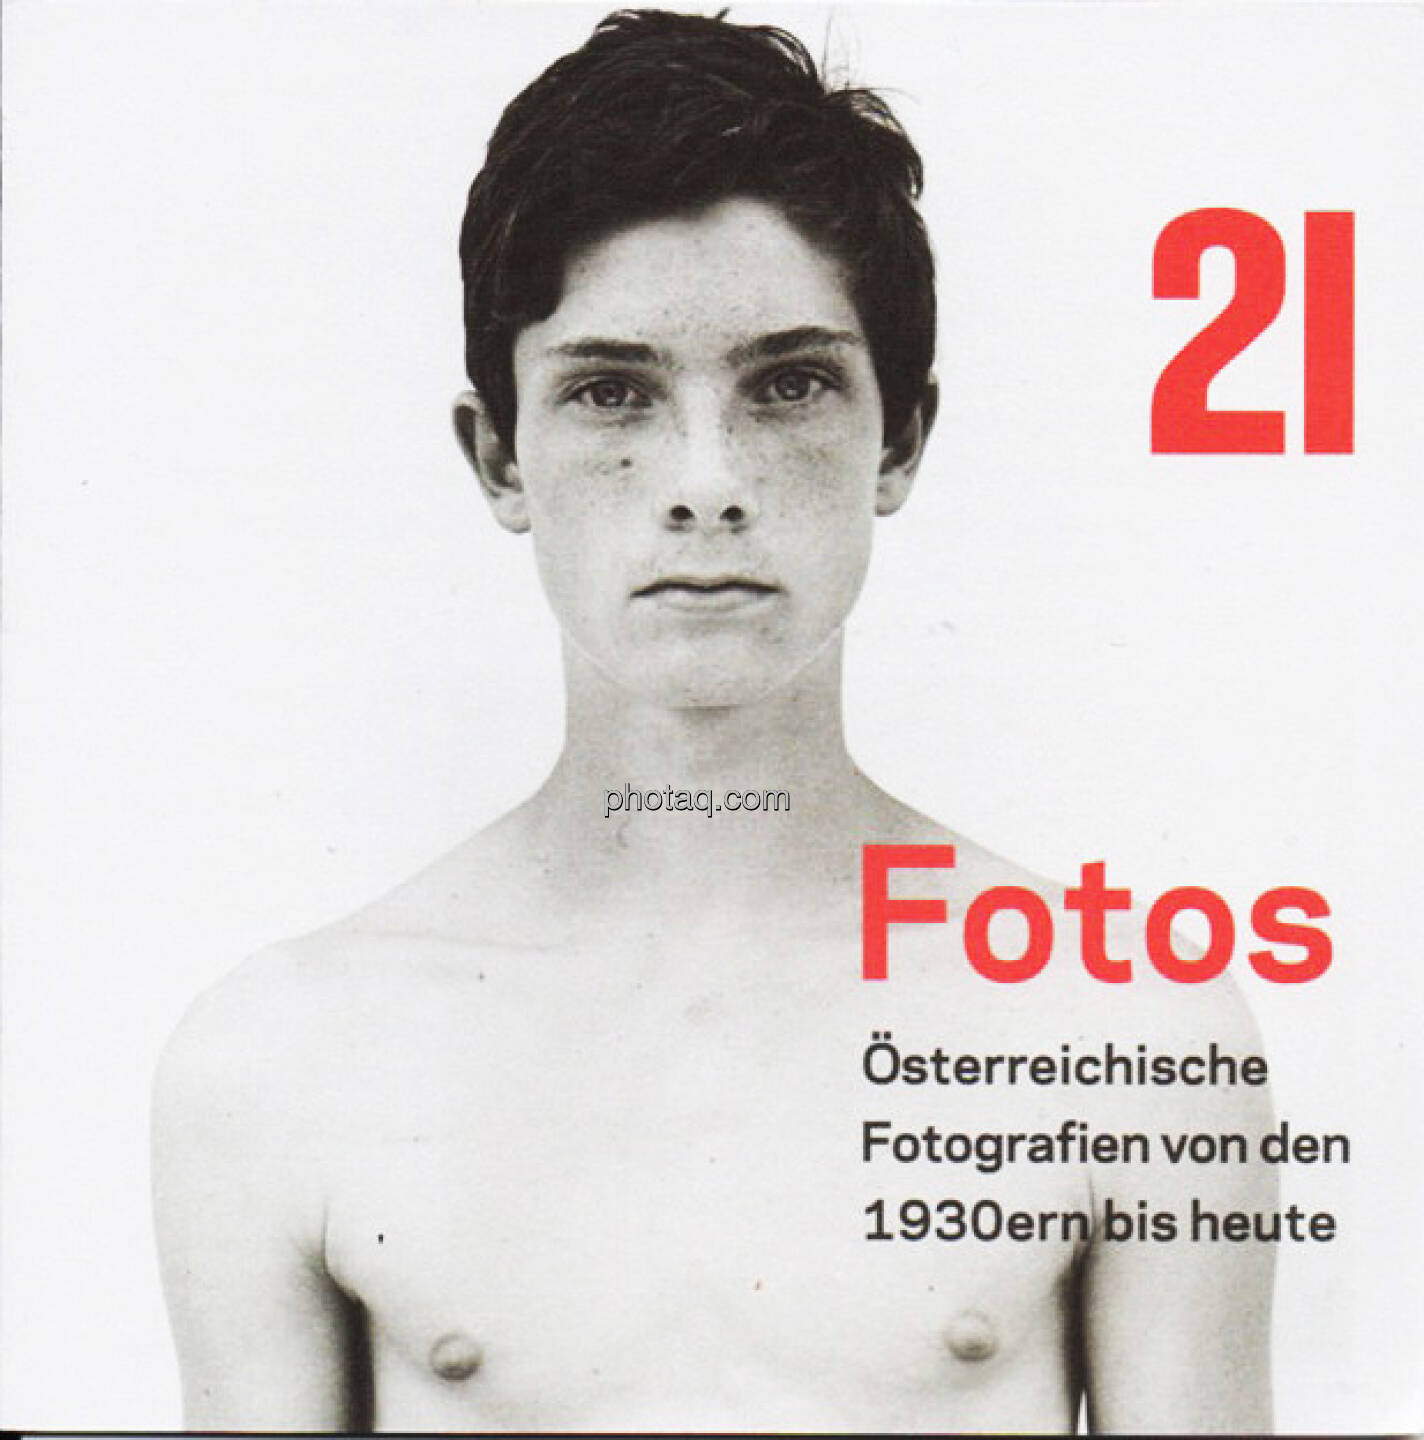 21er Haus - Fotos Österreichische Fotografien 1930er bis heute - Folder (Bild: aus dem Zyklus Knabenporträts  von Bernhard Fuchs)